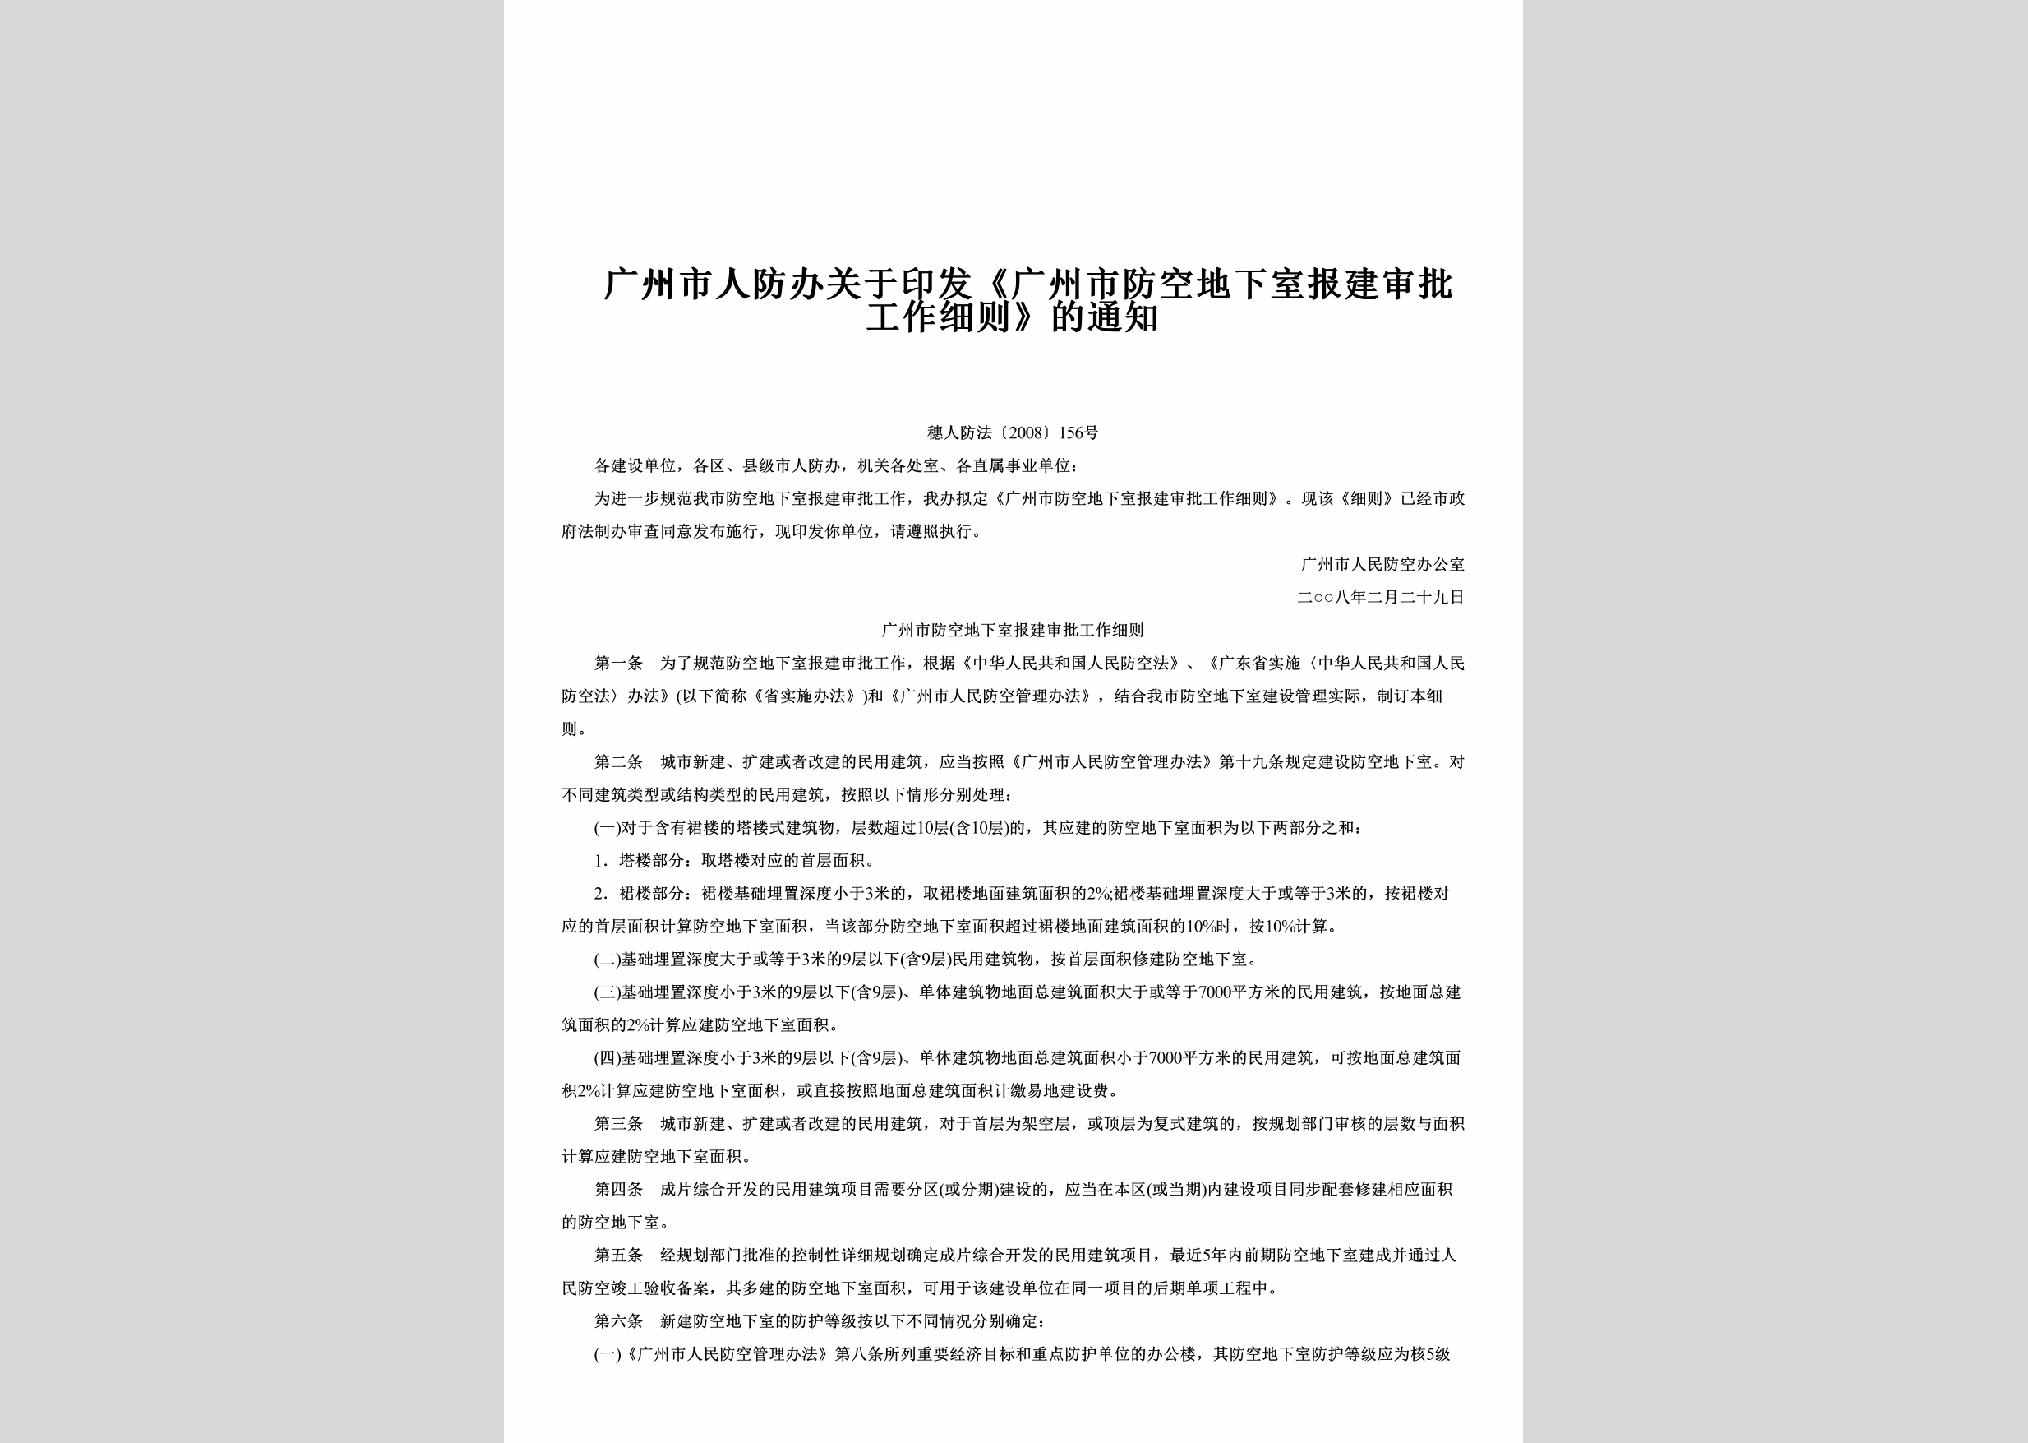 穗人防法[2008]156号：关于印发《广州市防空地下室报建审批工作细则》的通知